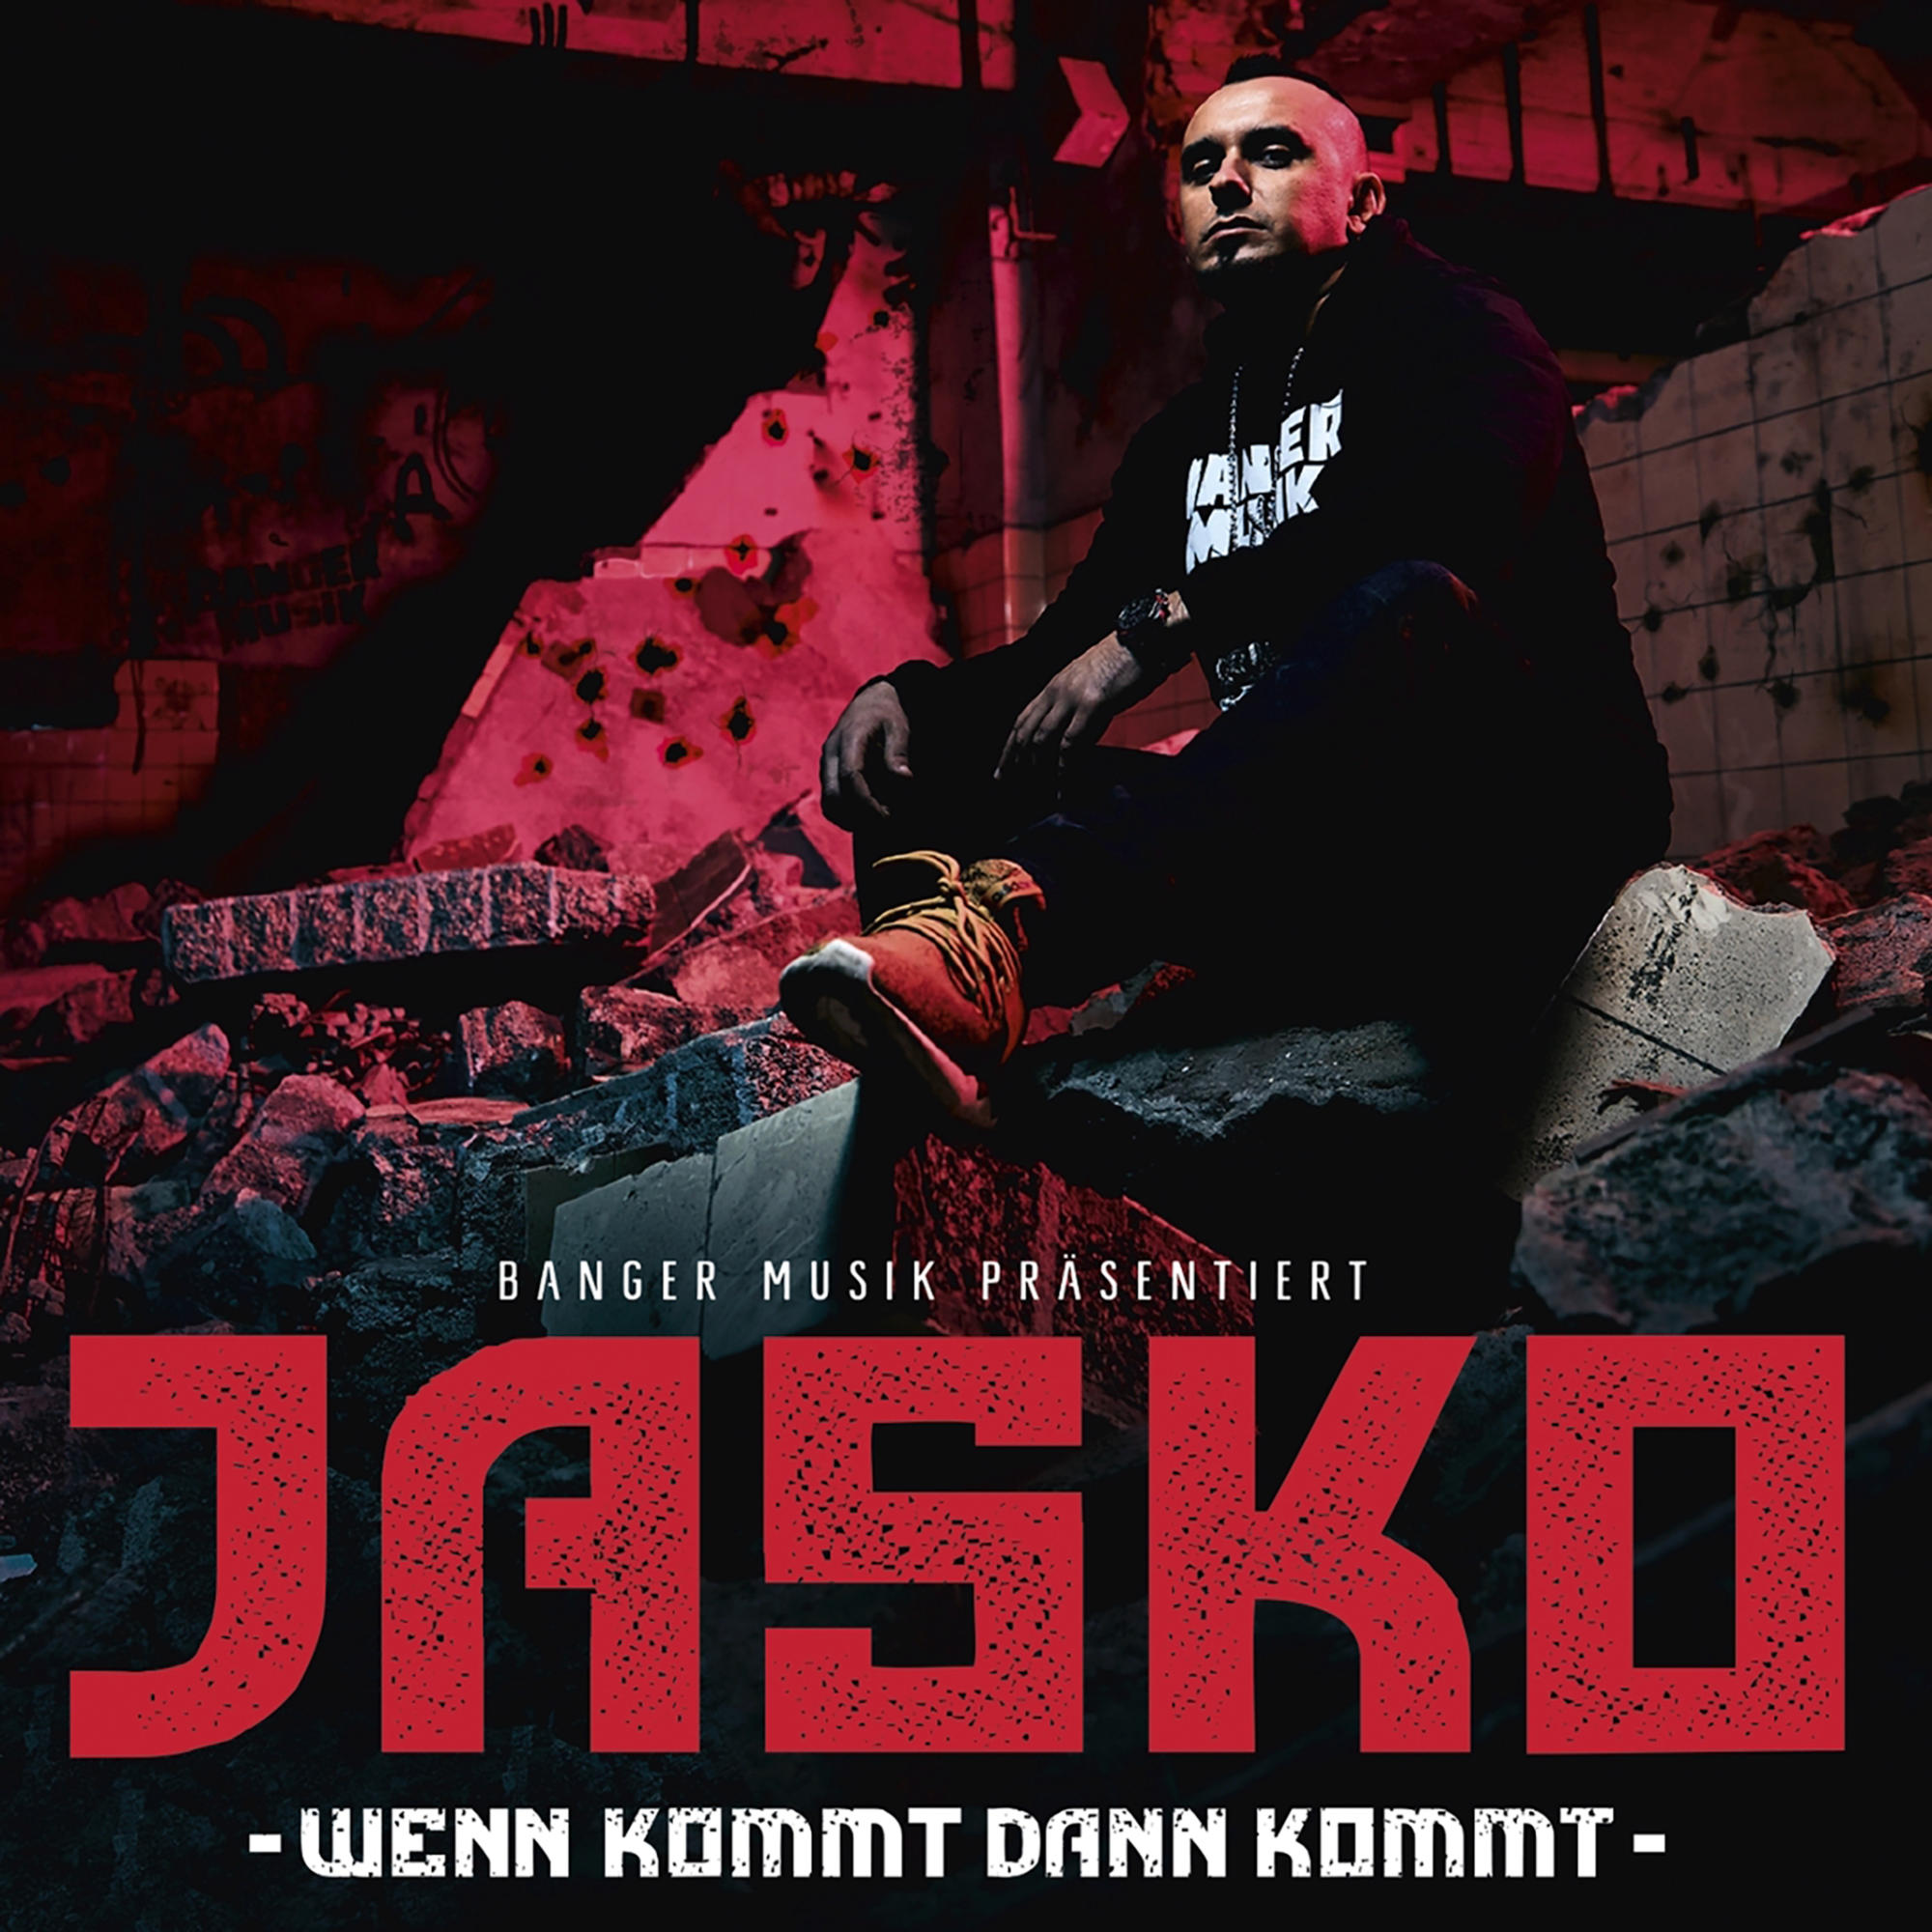 Jasko - Wenn Kommt (CD) Dann Kommt 